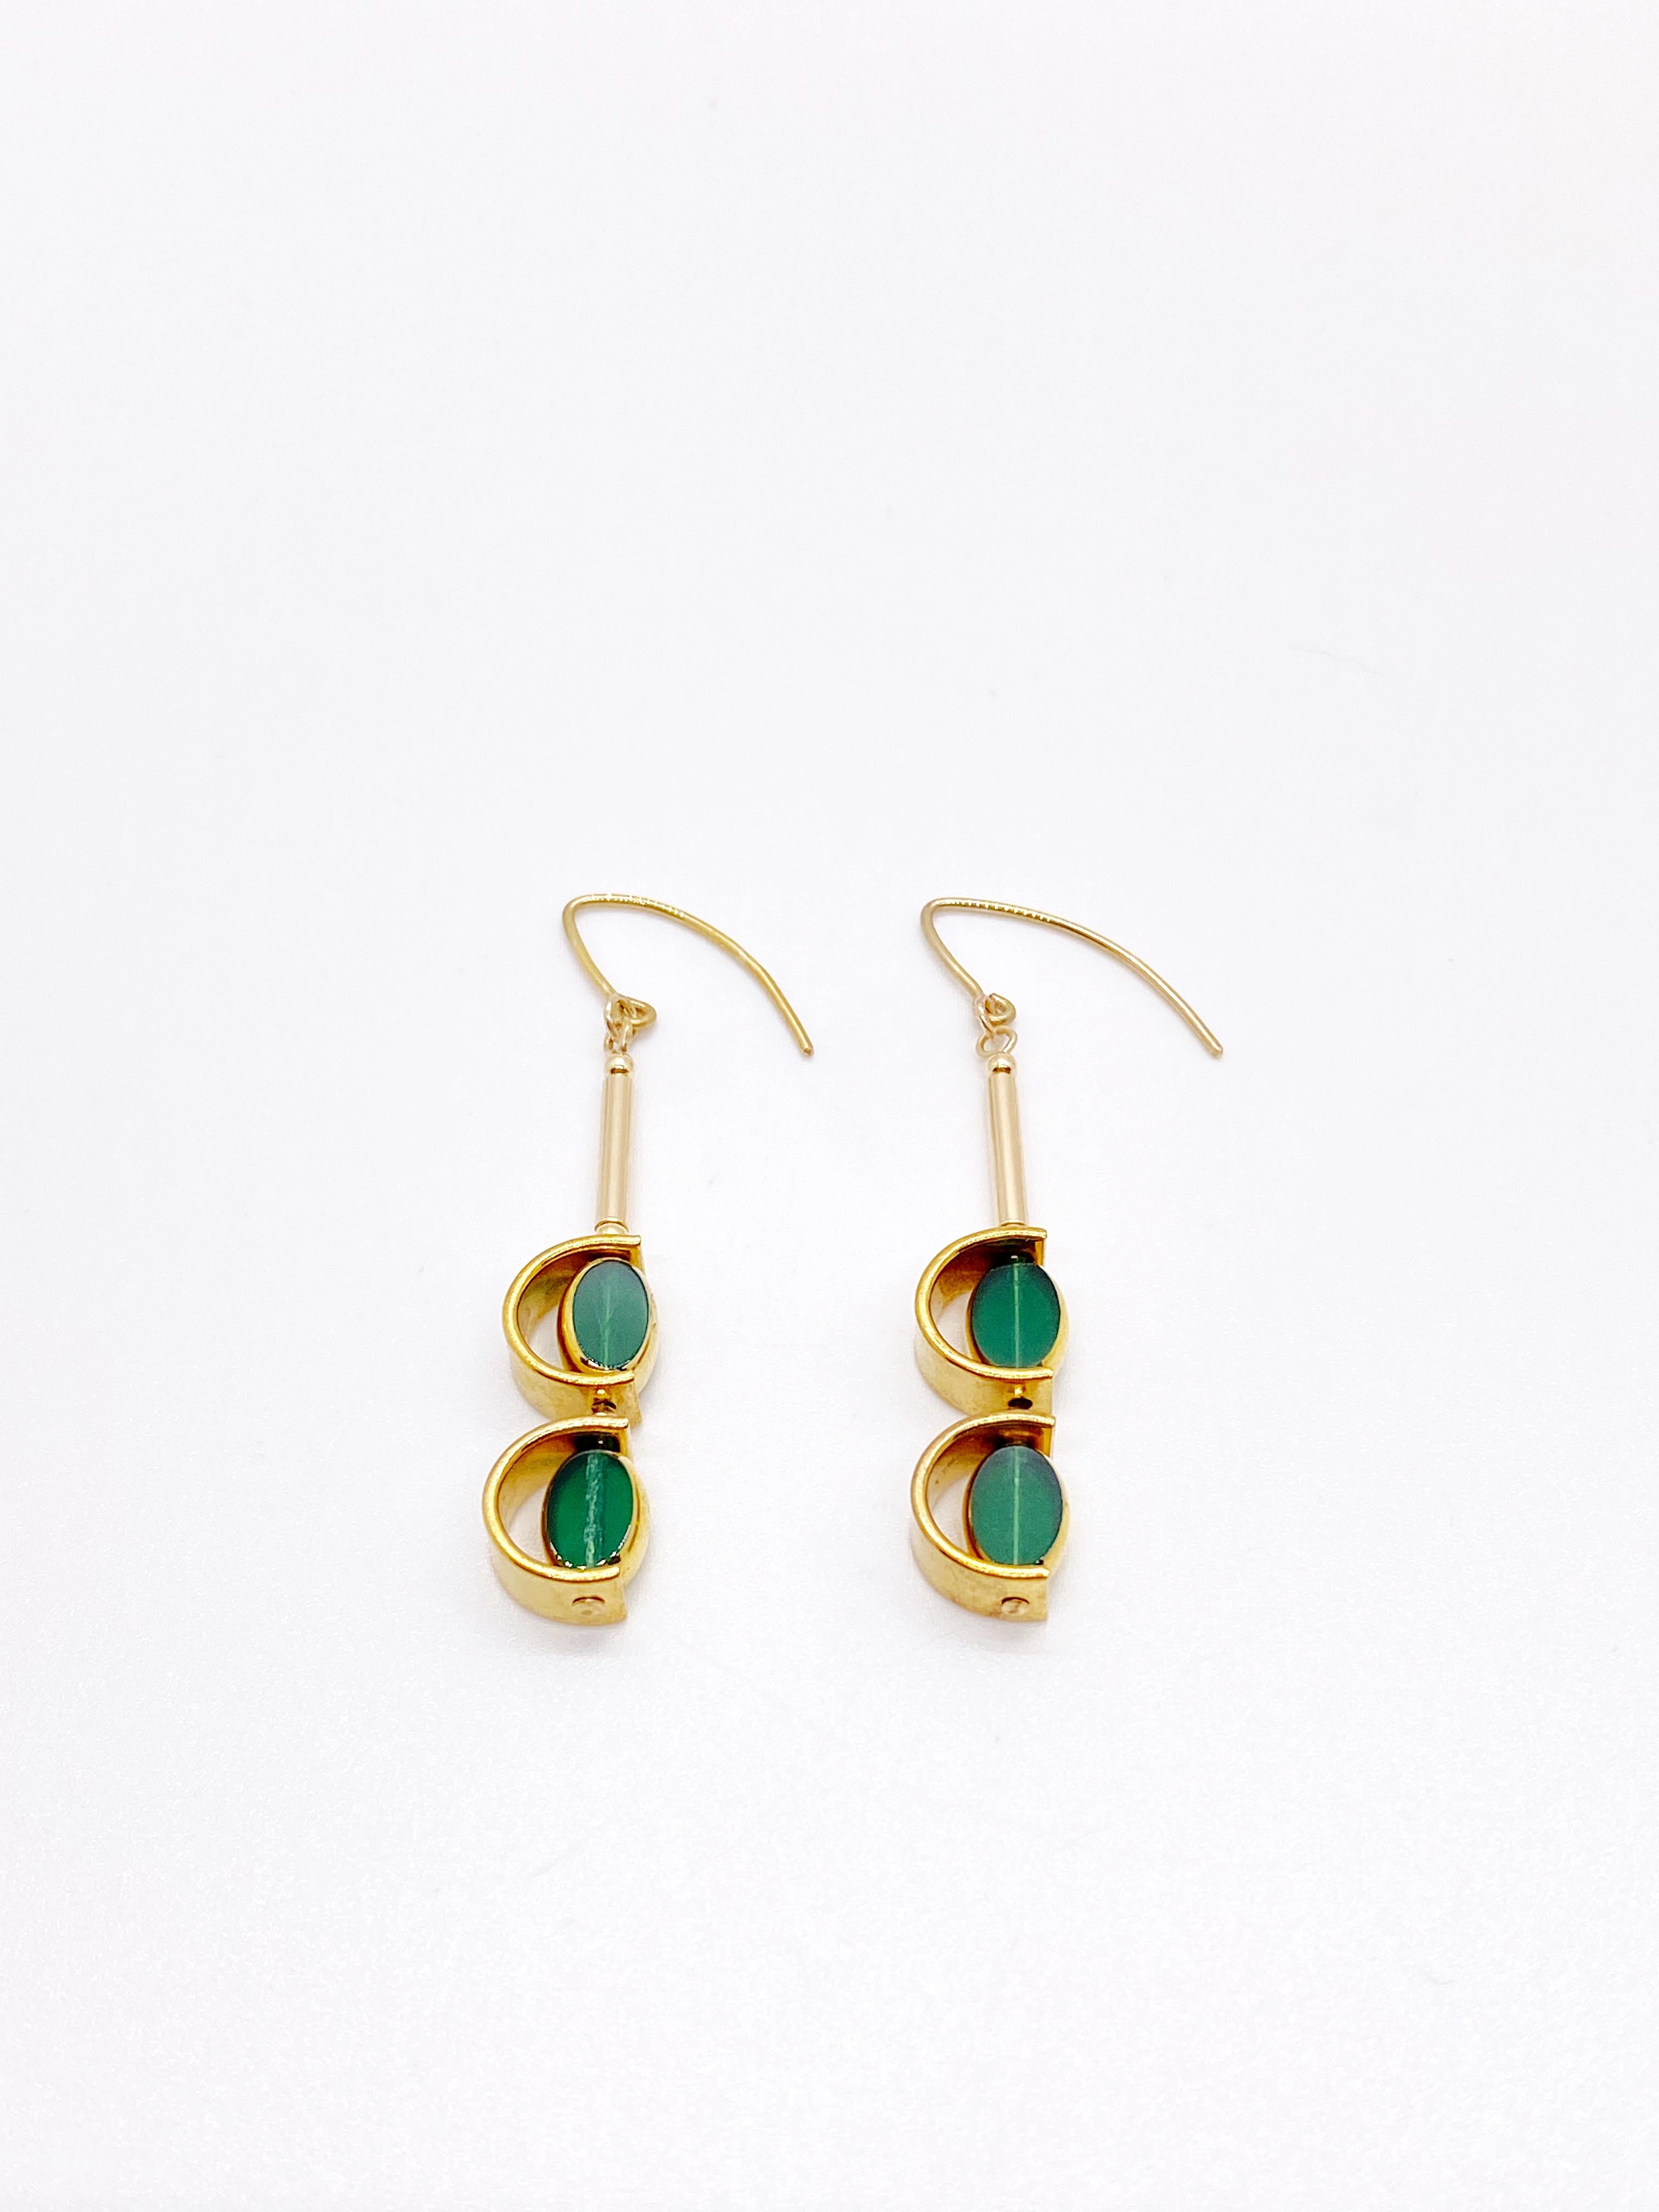 Dies ist für einen Satz Ohrringe. Die Ohrringe bestehen aus 2 Mini-Smaragd  grüne ovalförmige Perlen. Es handelt sich um neue alte deutsche Glasperlen, die mit 24-karätigem Gold umrahmt sind. Die Perlen wurden in den 1920er bis 1960er Jahren von